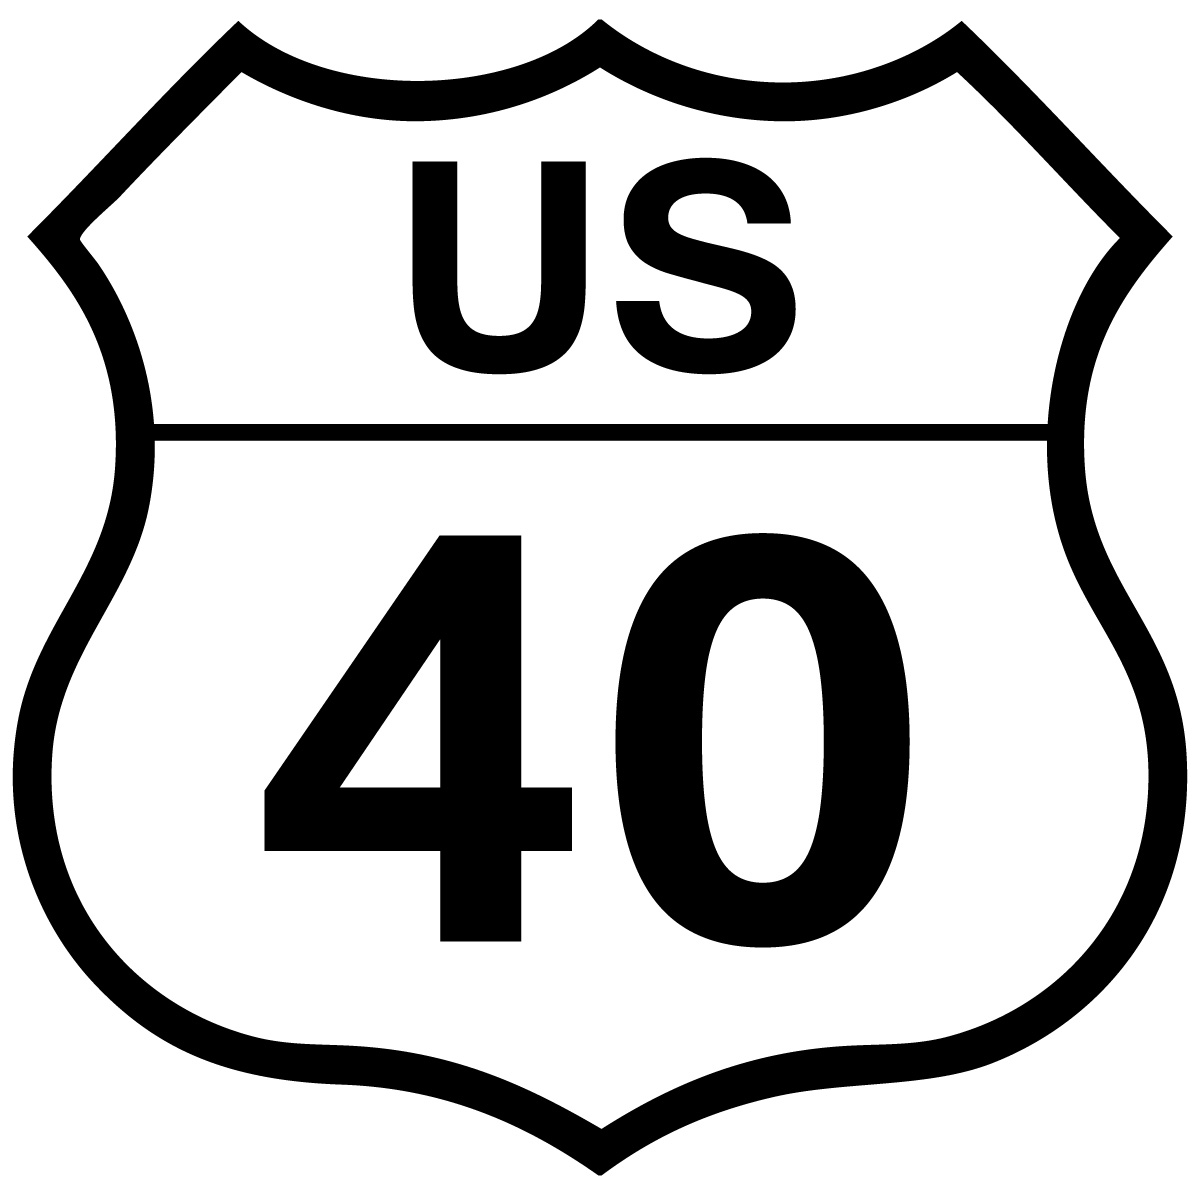 US 34